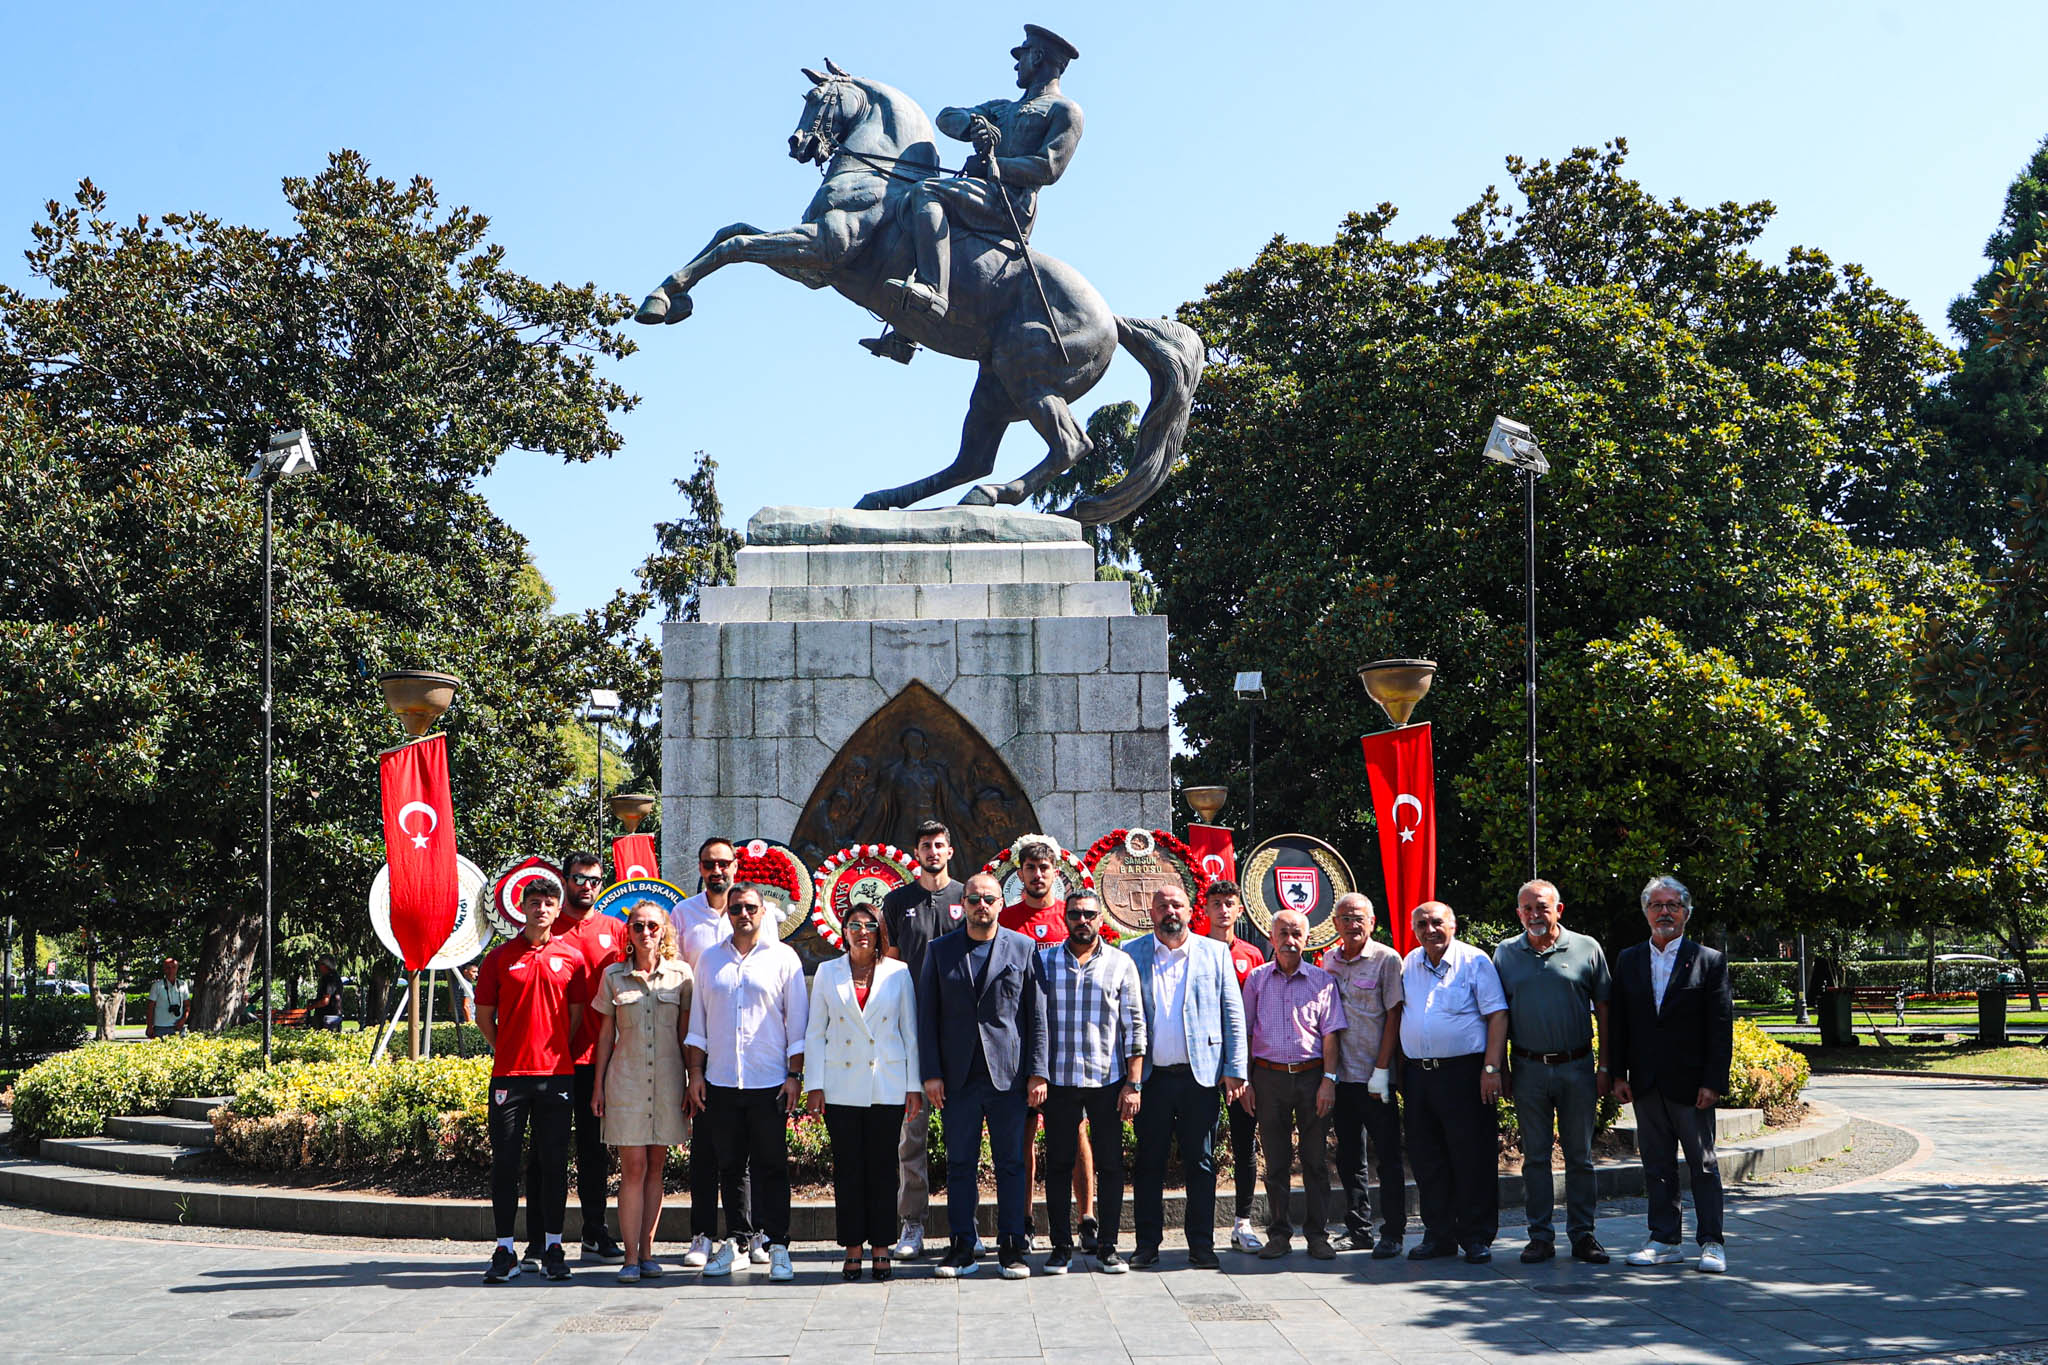 Samsunspor Atatürk Anıtına çelenk bıraktı